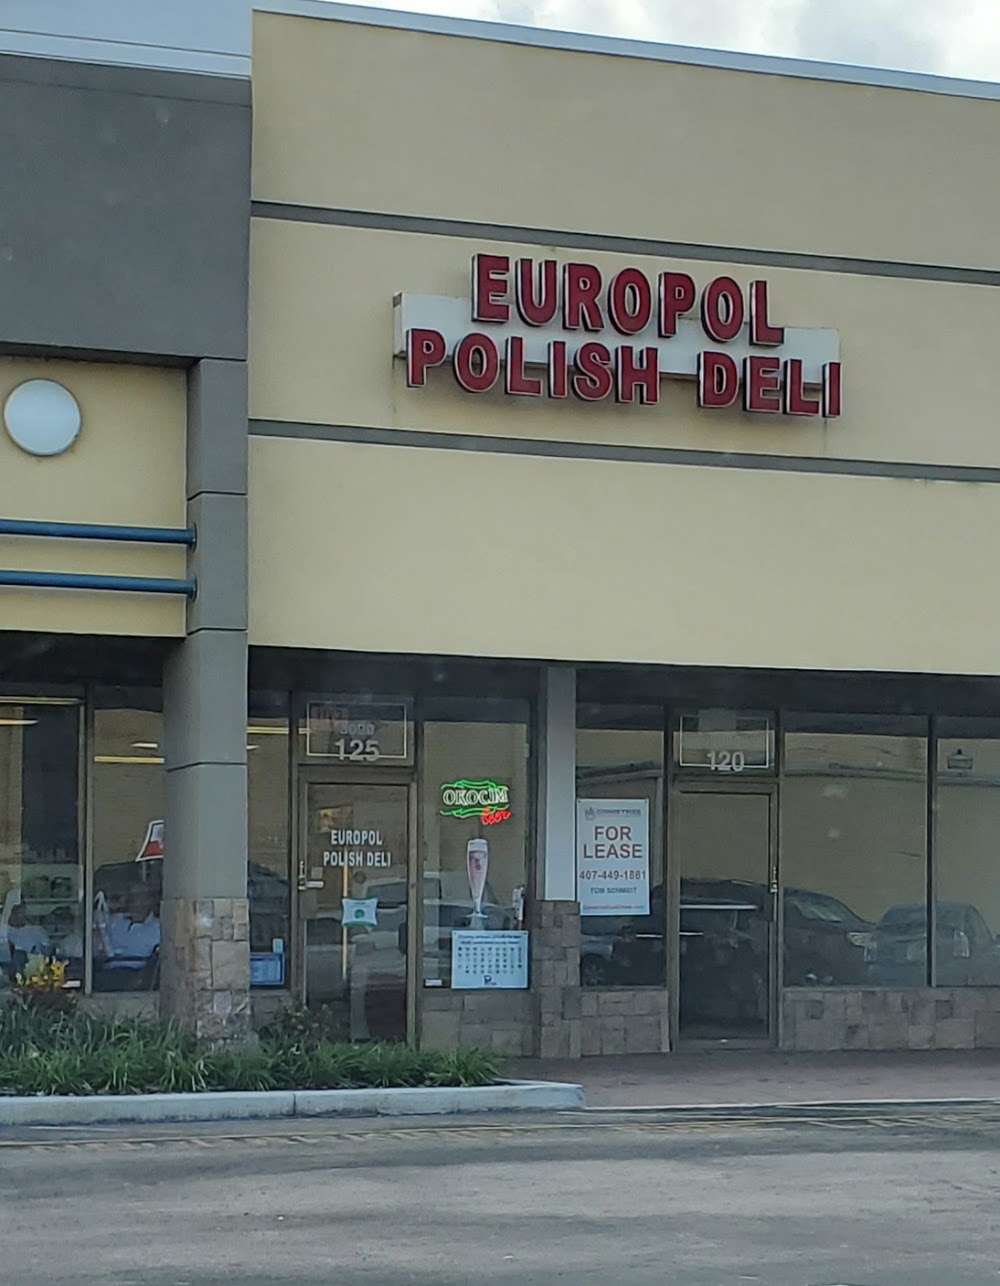 Europol Polish Deli